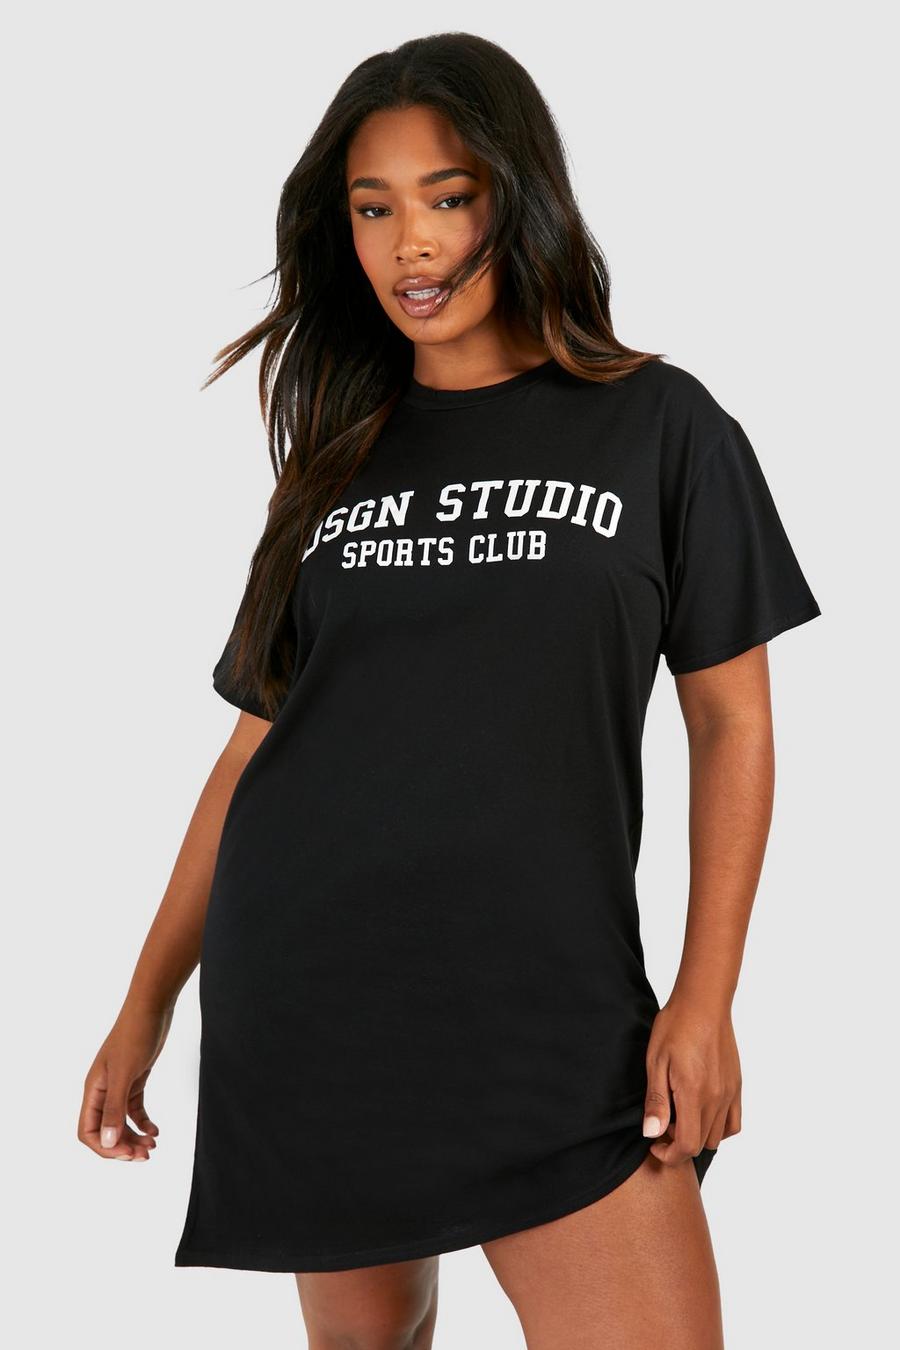 Vestido camiseta Plus Dsgn Studio Sports Club, Black